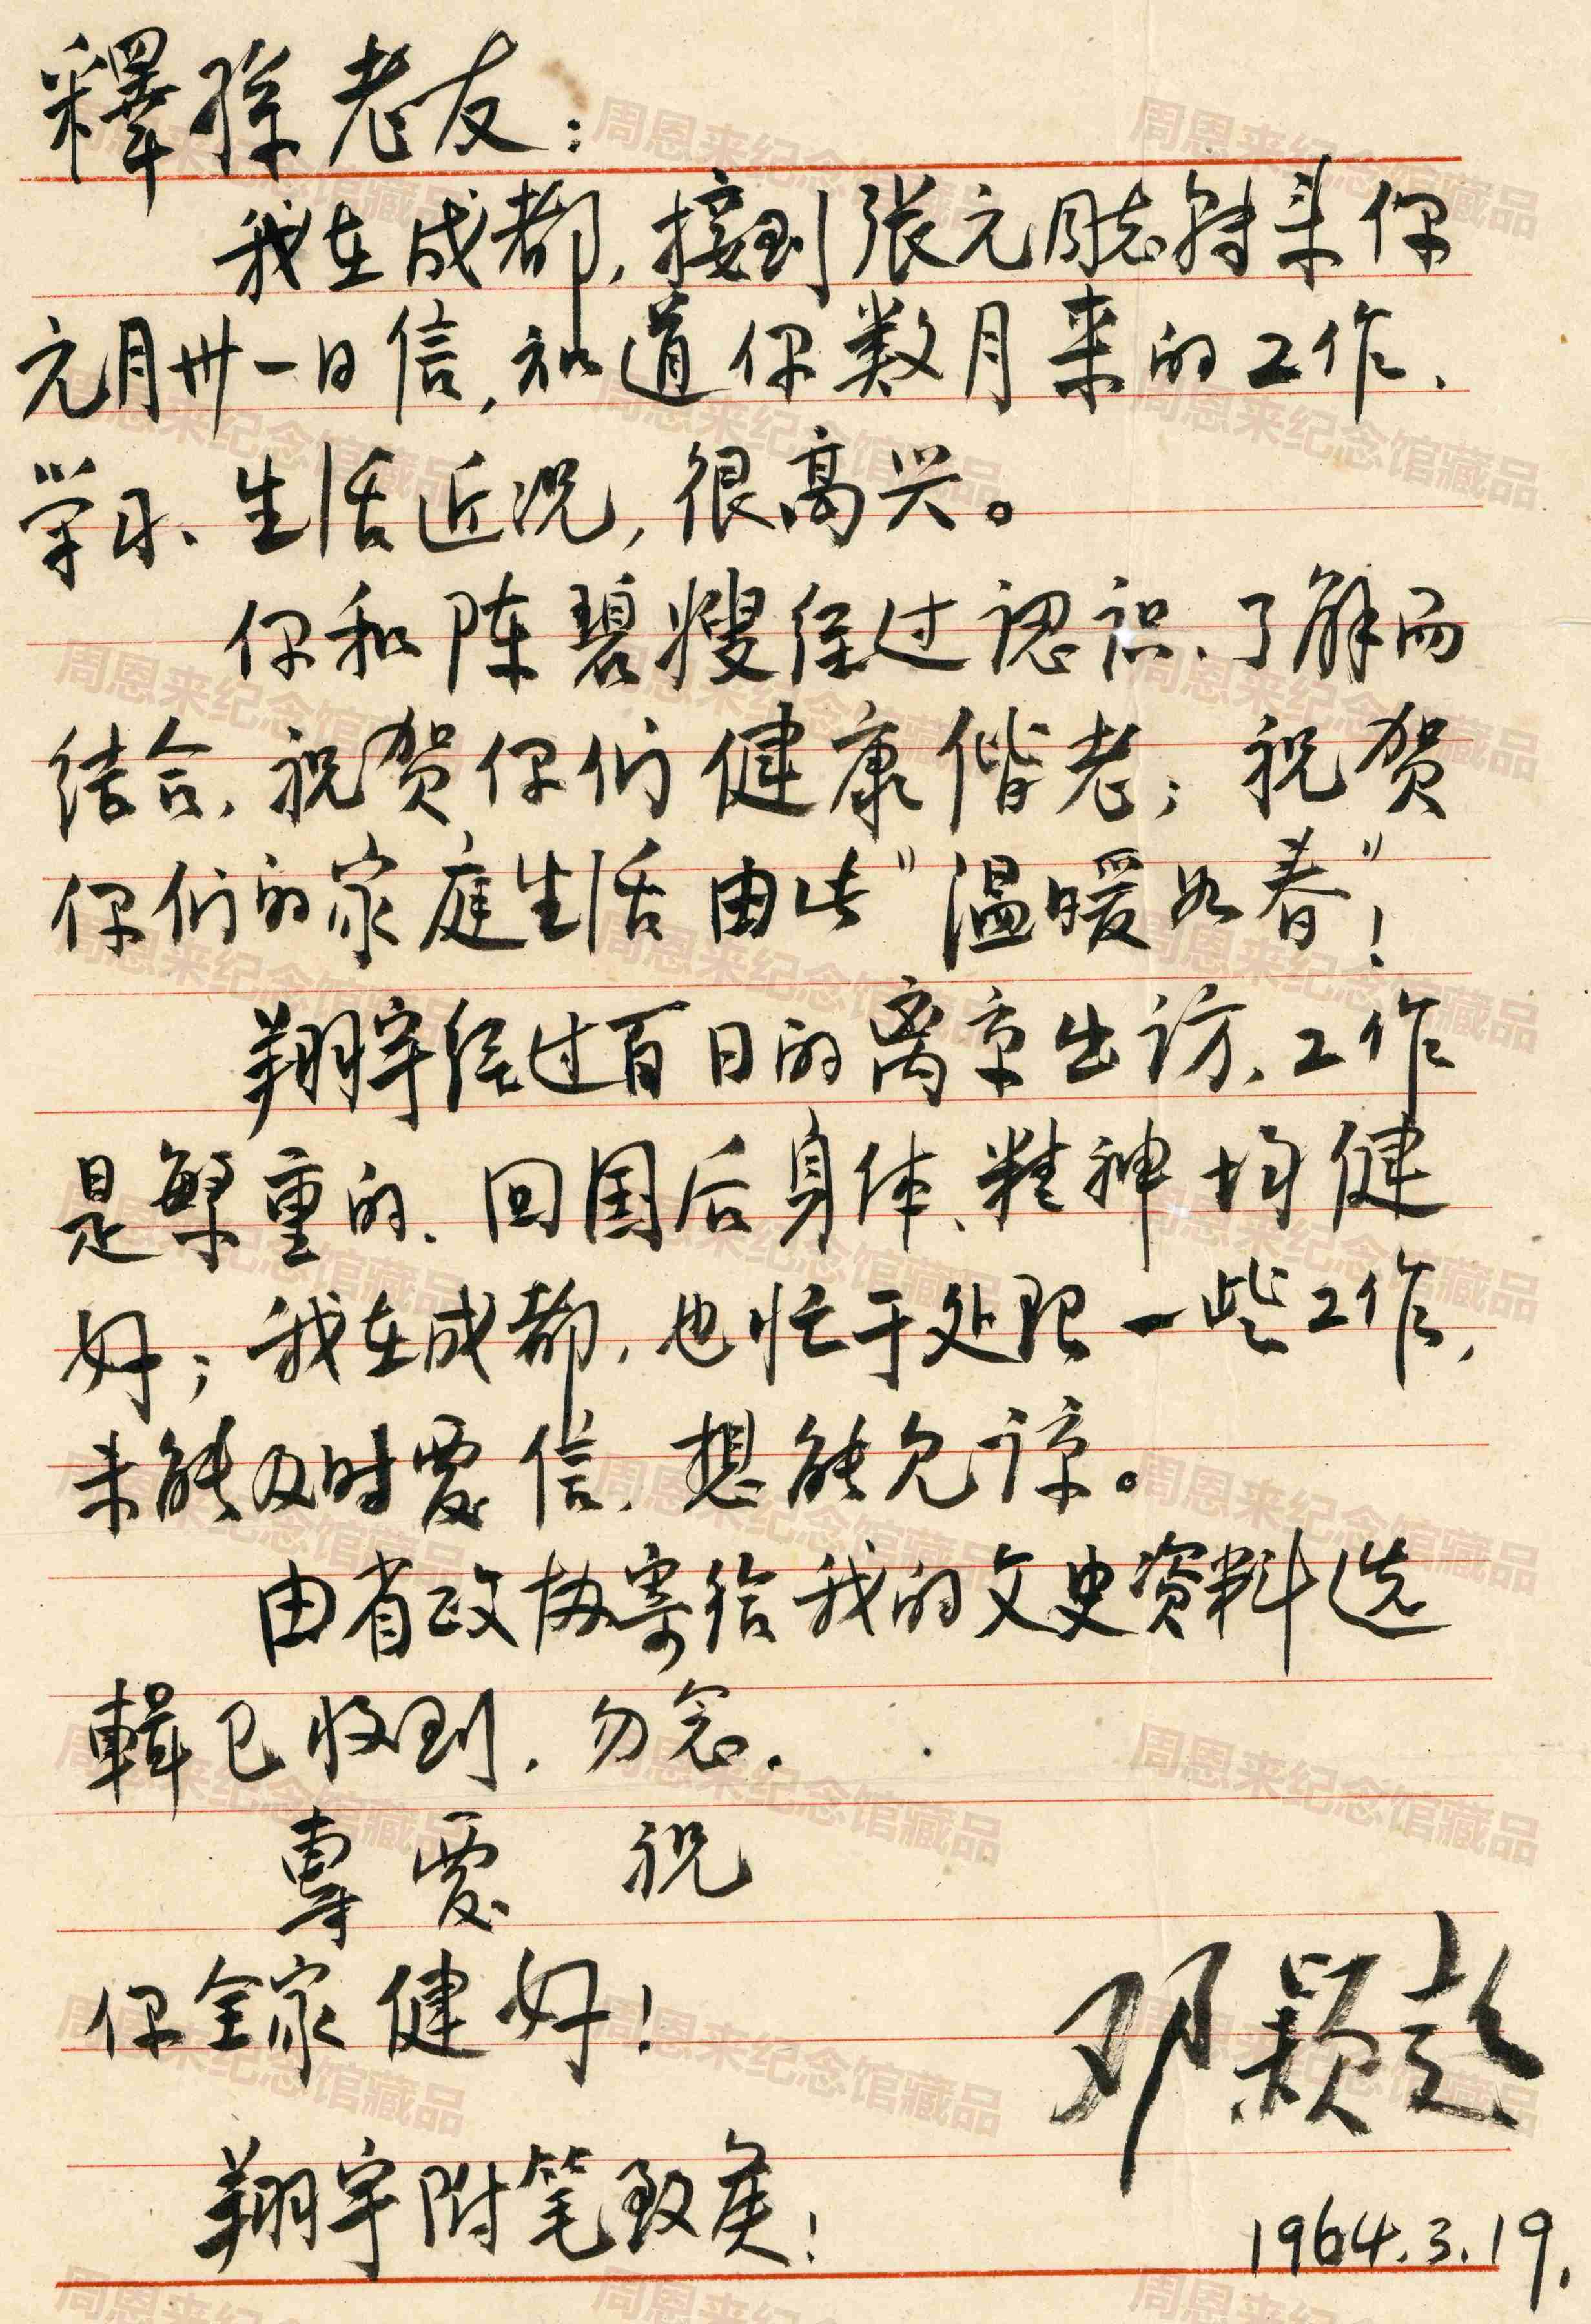 W509 1964年3月19日邓颖超给周恩来挚友谌志笃的亲笔信.jpg